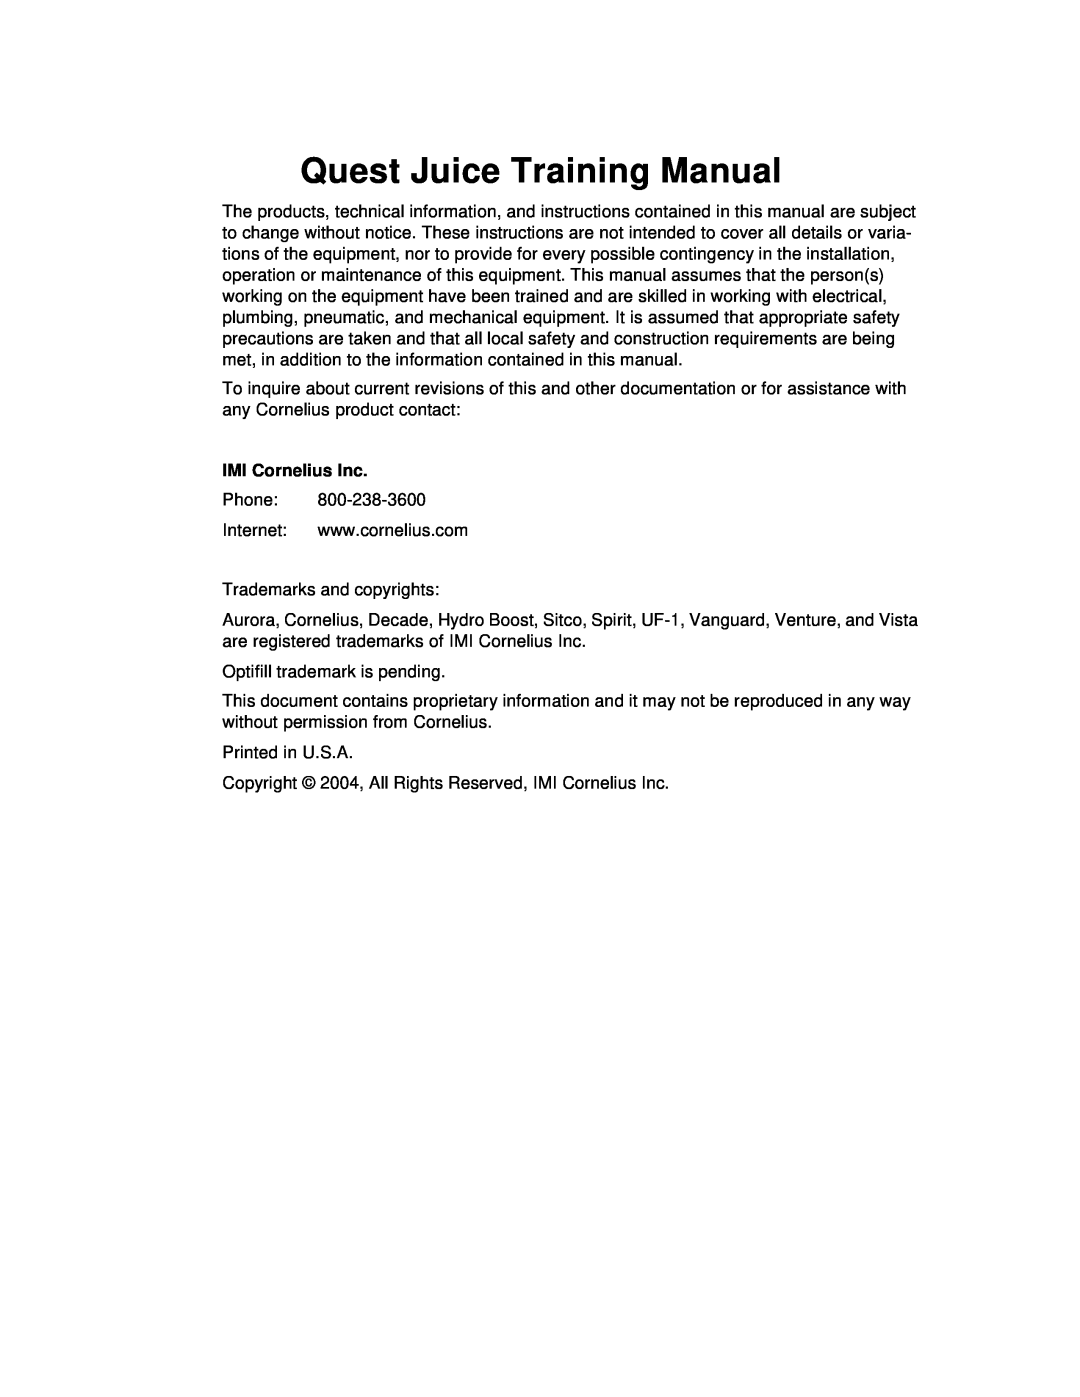 Cornelius 4 Flavor, 2 Flavor manual Quest Juice Training Manual, IMI Cornelius Inc 